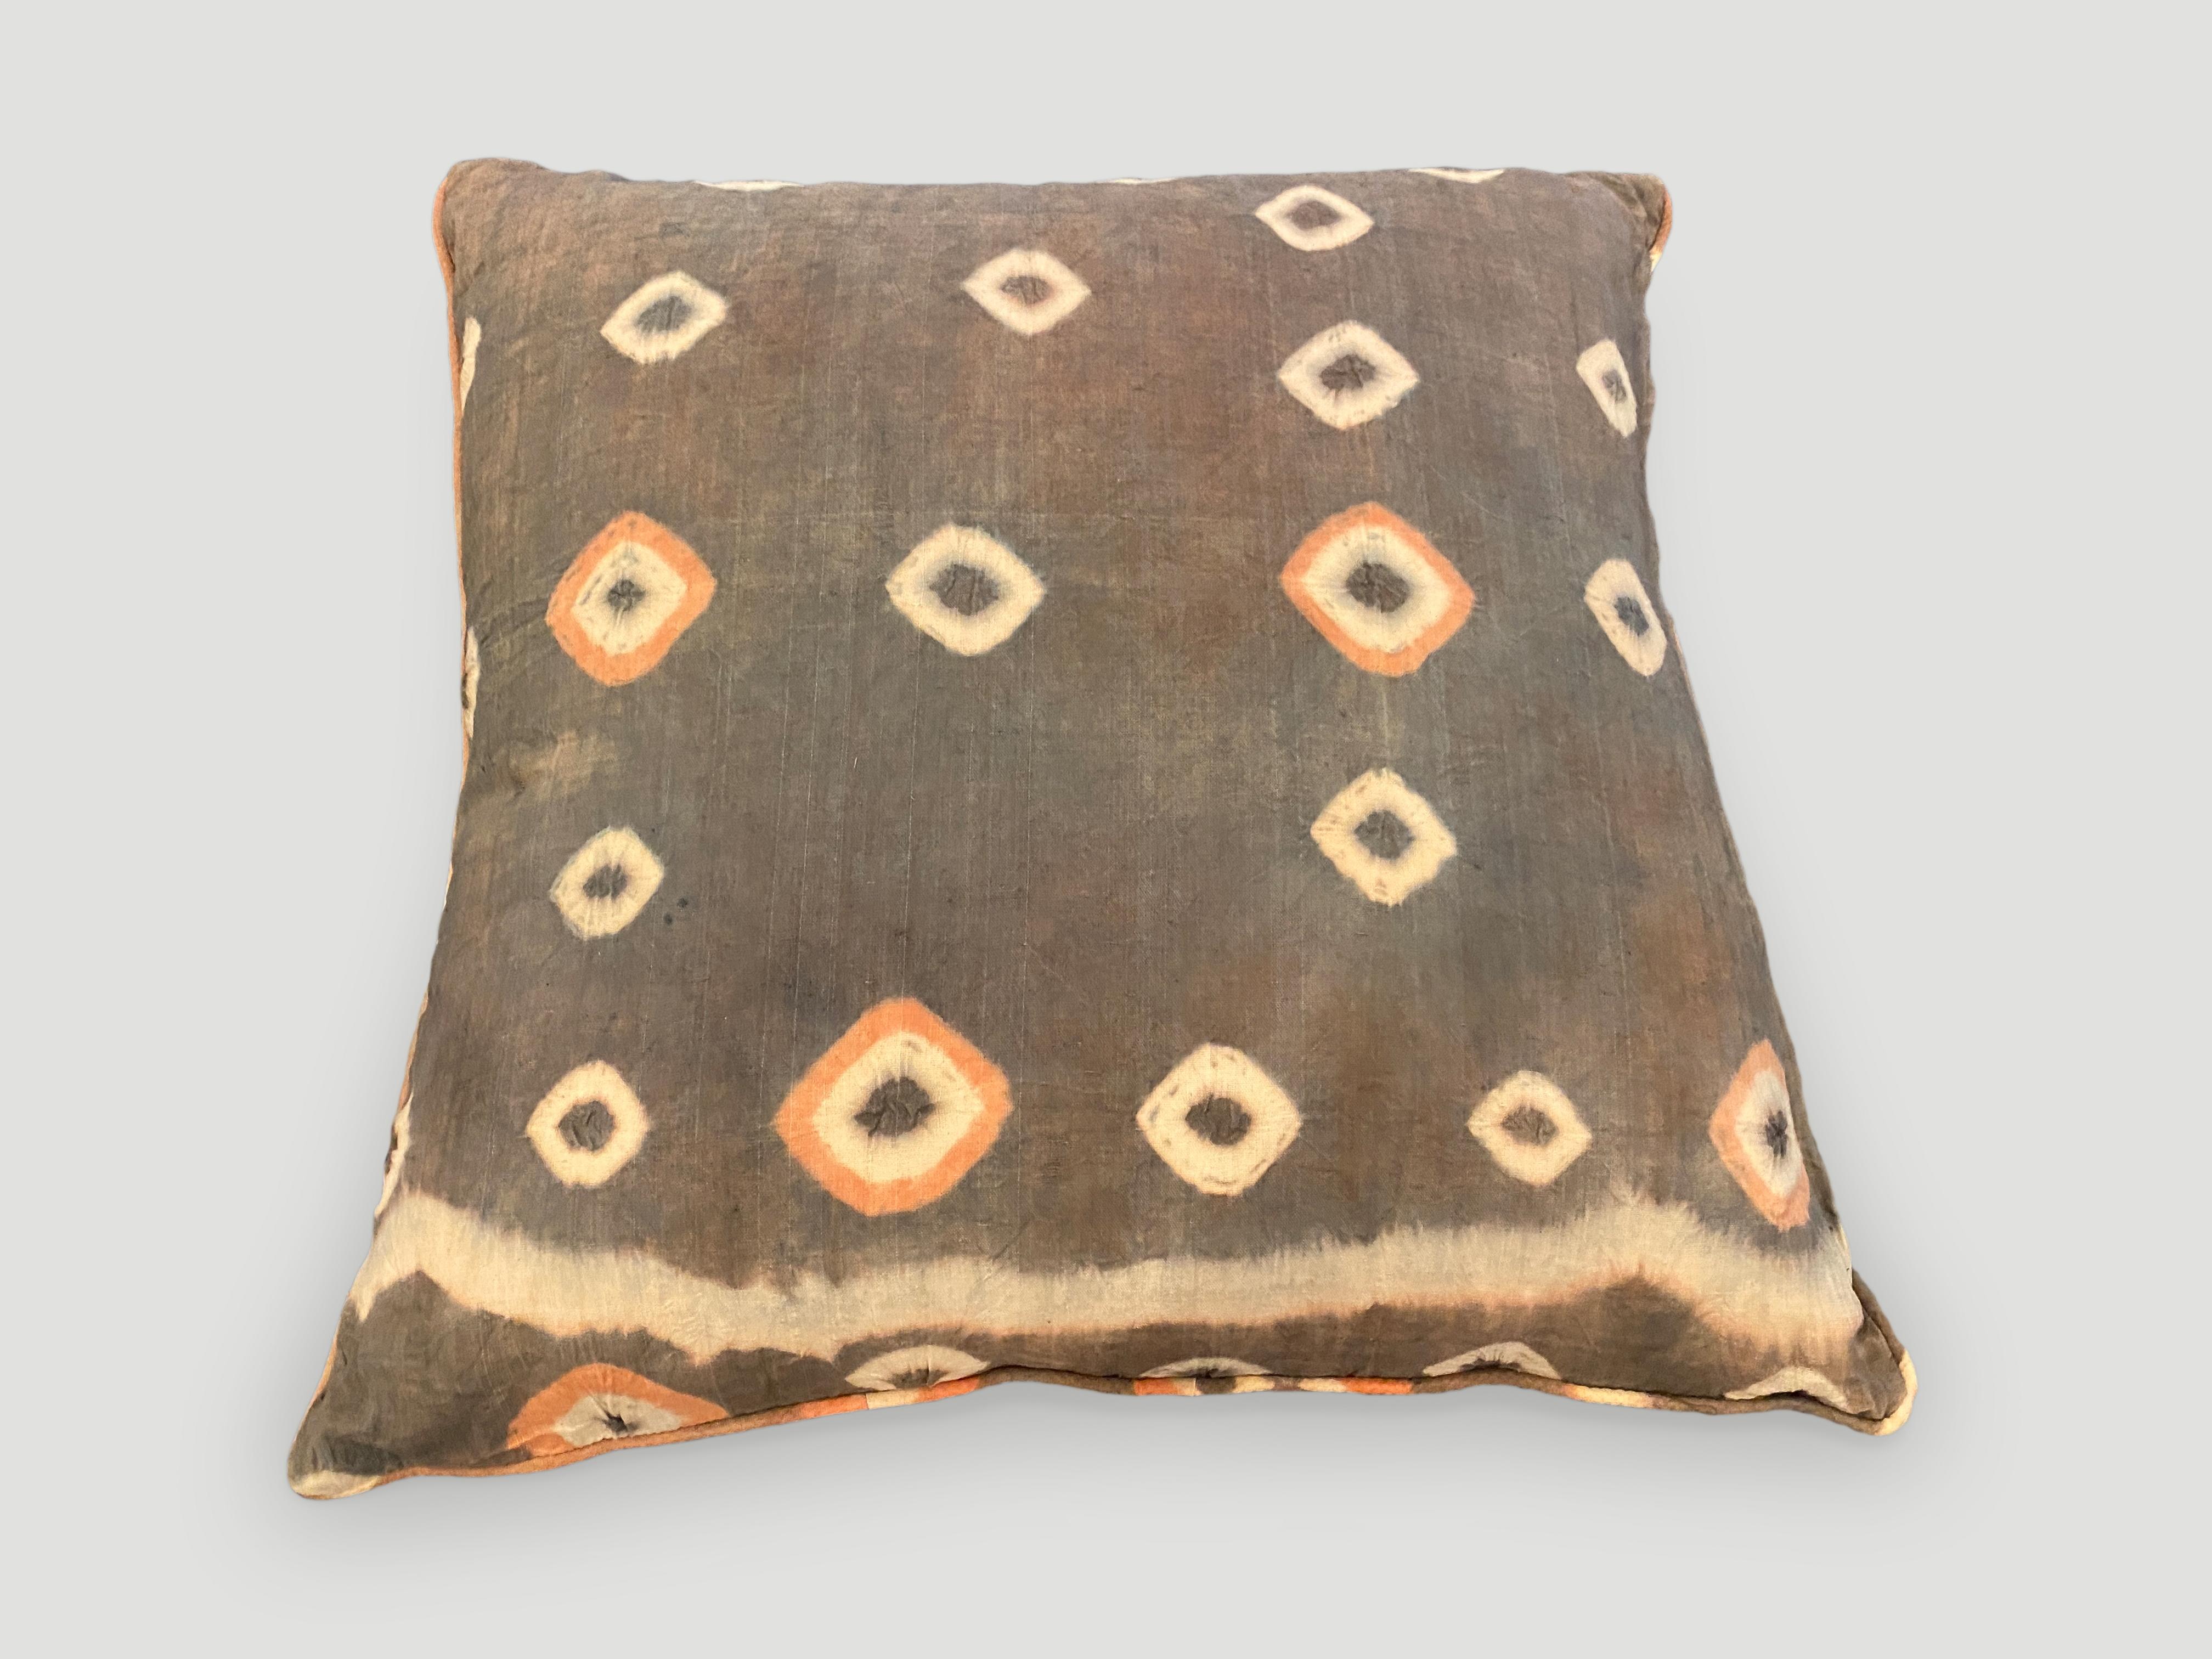 De magnifiques textiles anciens trouvés à Toraja Land, dans le sud de Sulawesi, sont transformés en oreillers avec des passepoils et des fermetures éclair dissimulées. Double dos avec de superbes couleurs contrastées. Inserts inclus. Un mélange de